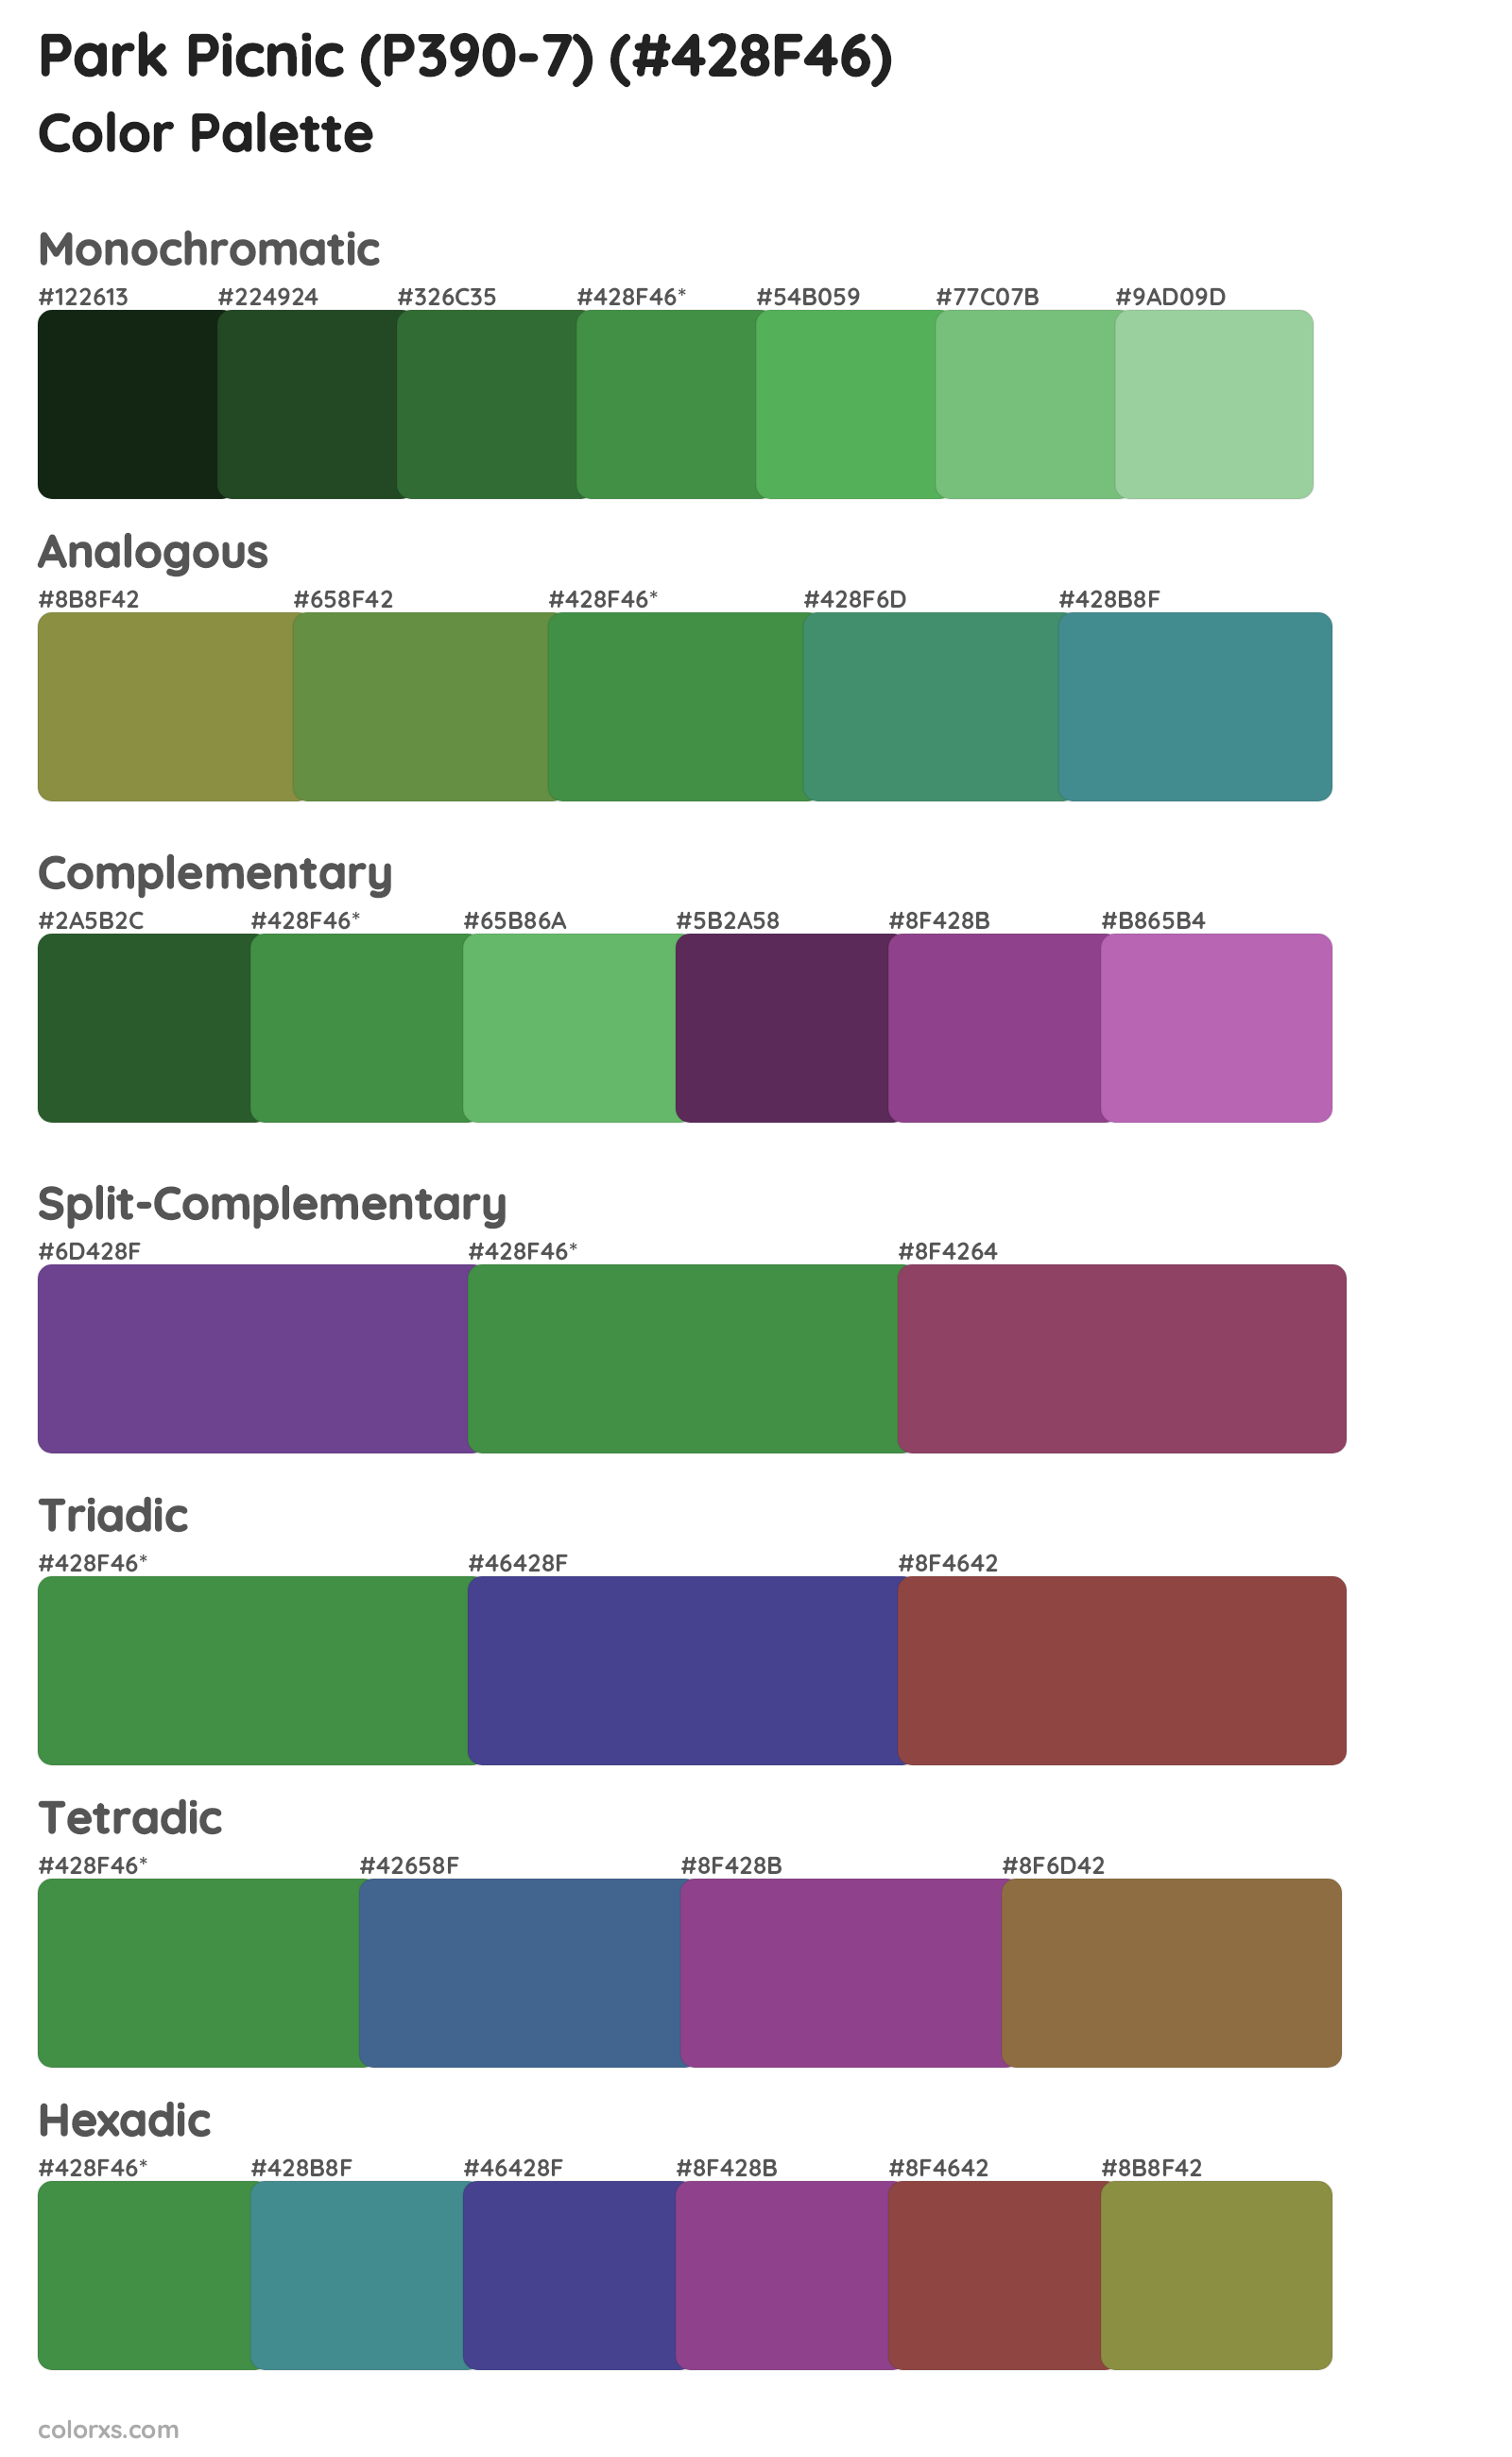 Park Picnic (P390-7) Color Scheme Palettes